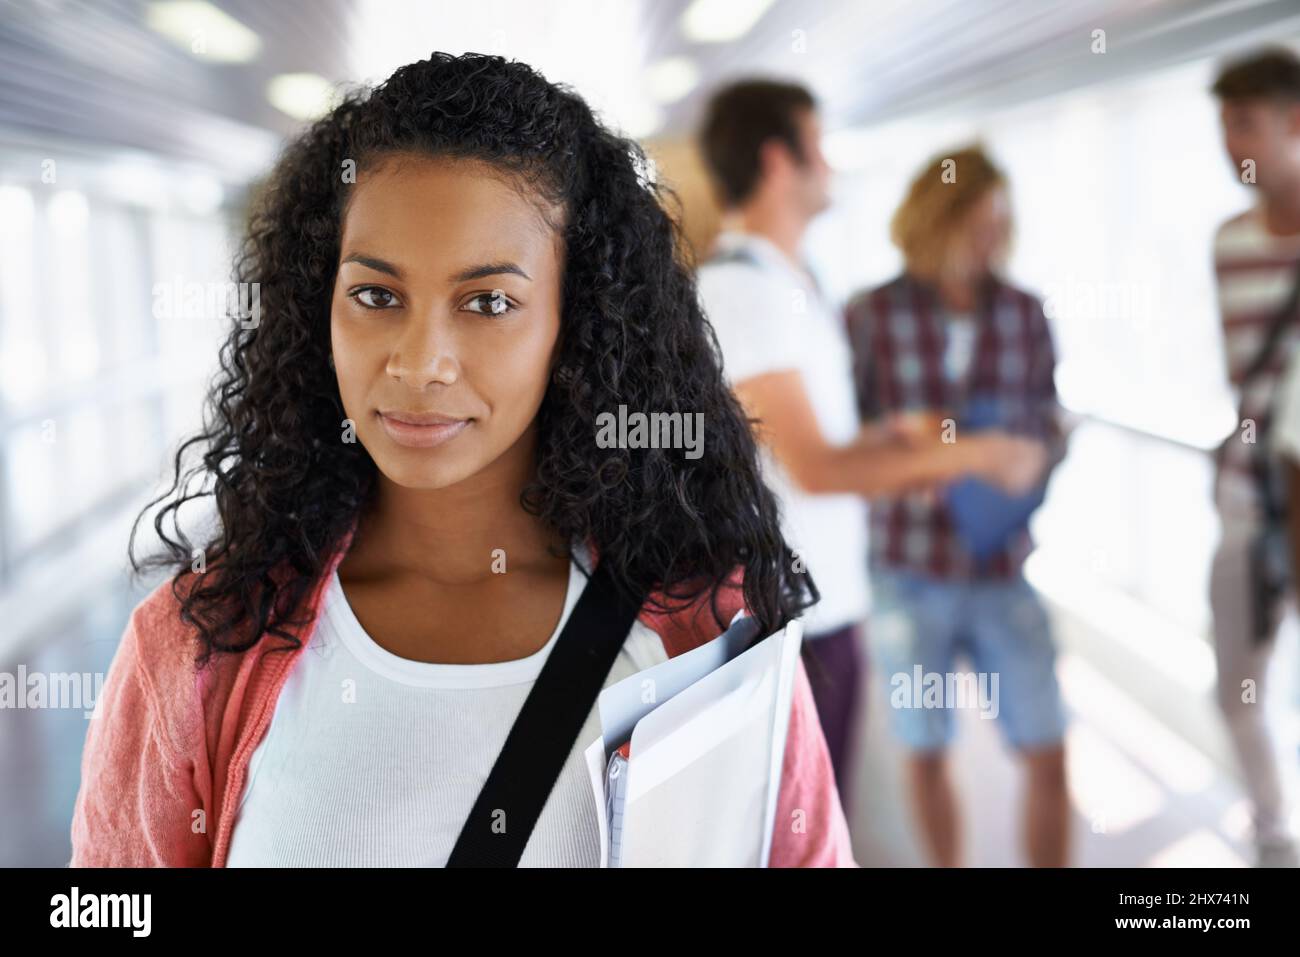 Shes pronto per il semestre. Ritratto di una giovane studentessa attraente in piedi con i suoi amici sullo sfondo. Foto Stock